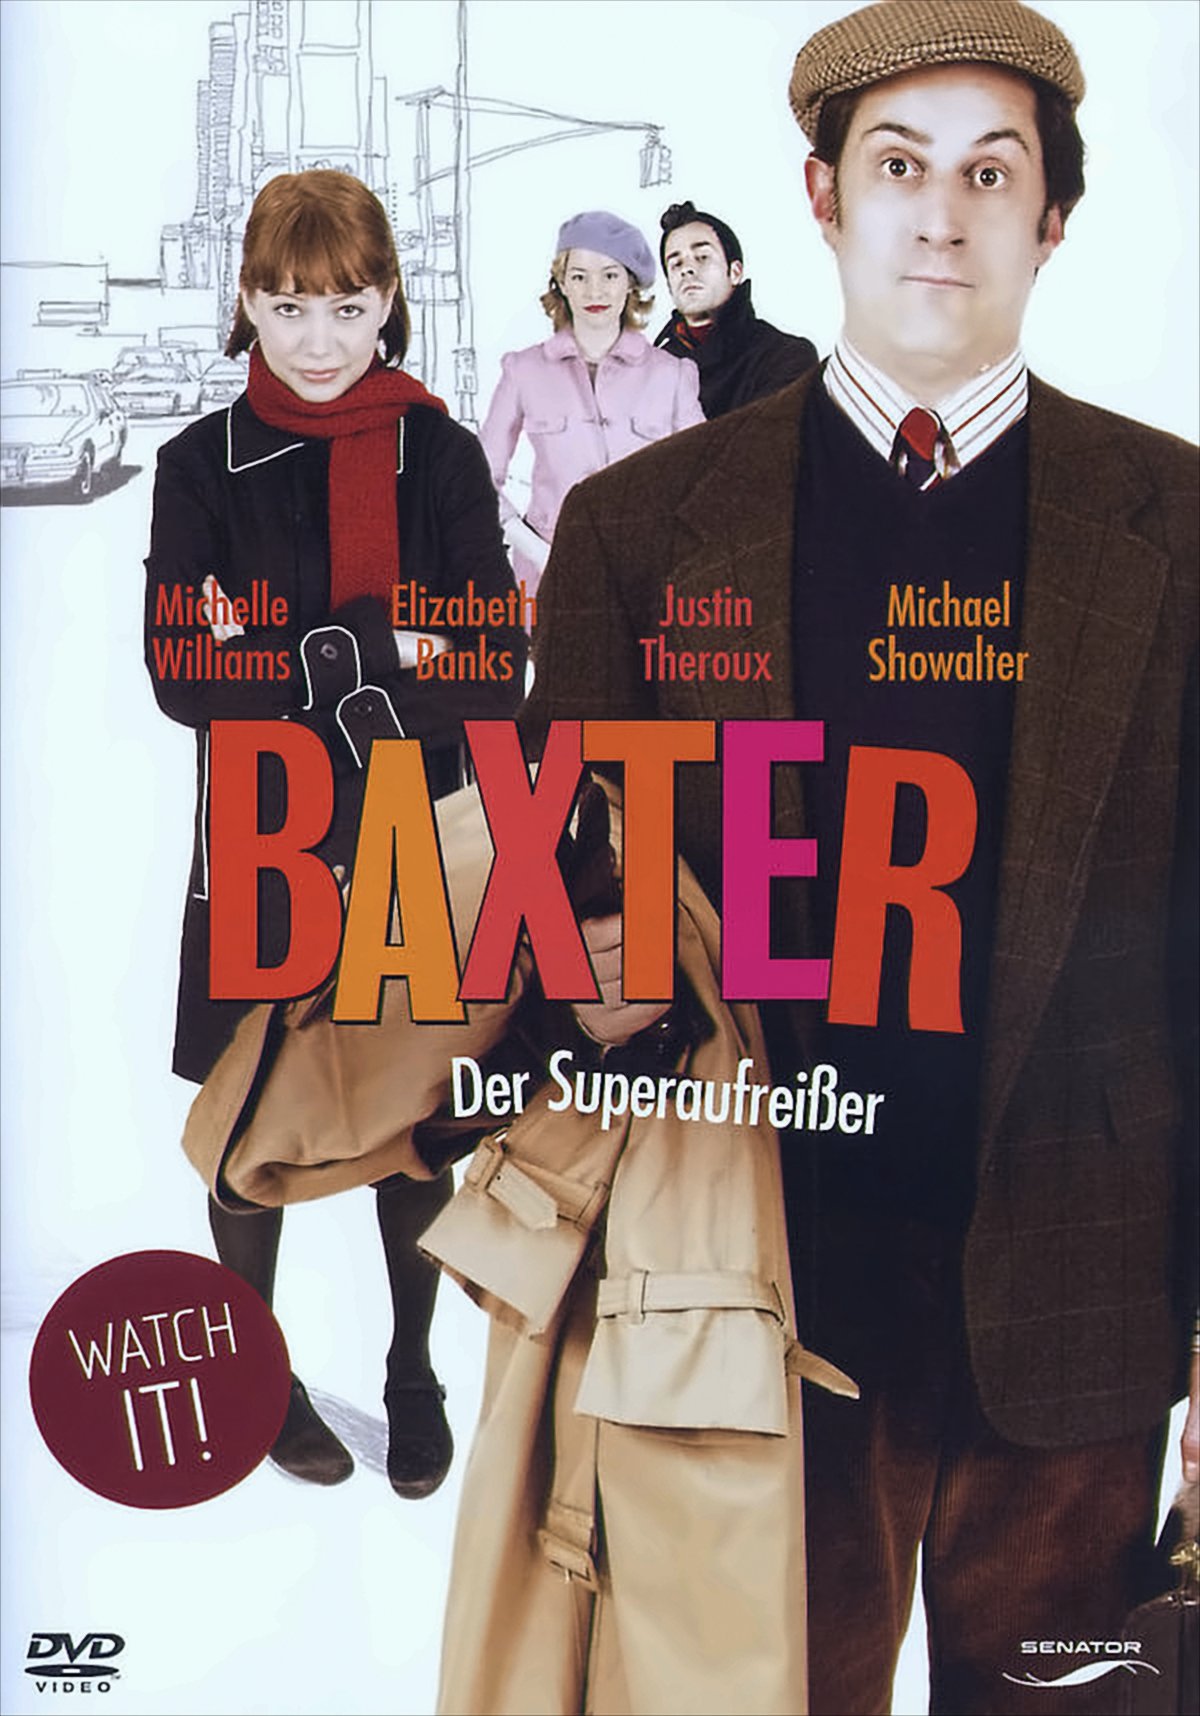 Baxter-Der Superaufreißer von LEONINE Distribution GmbH